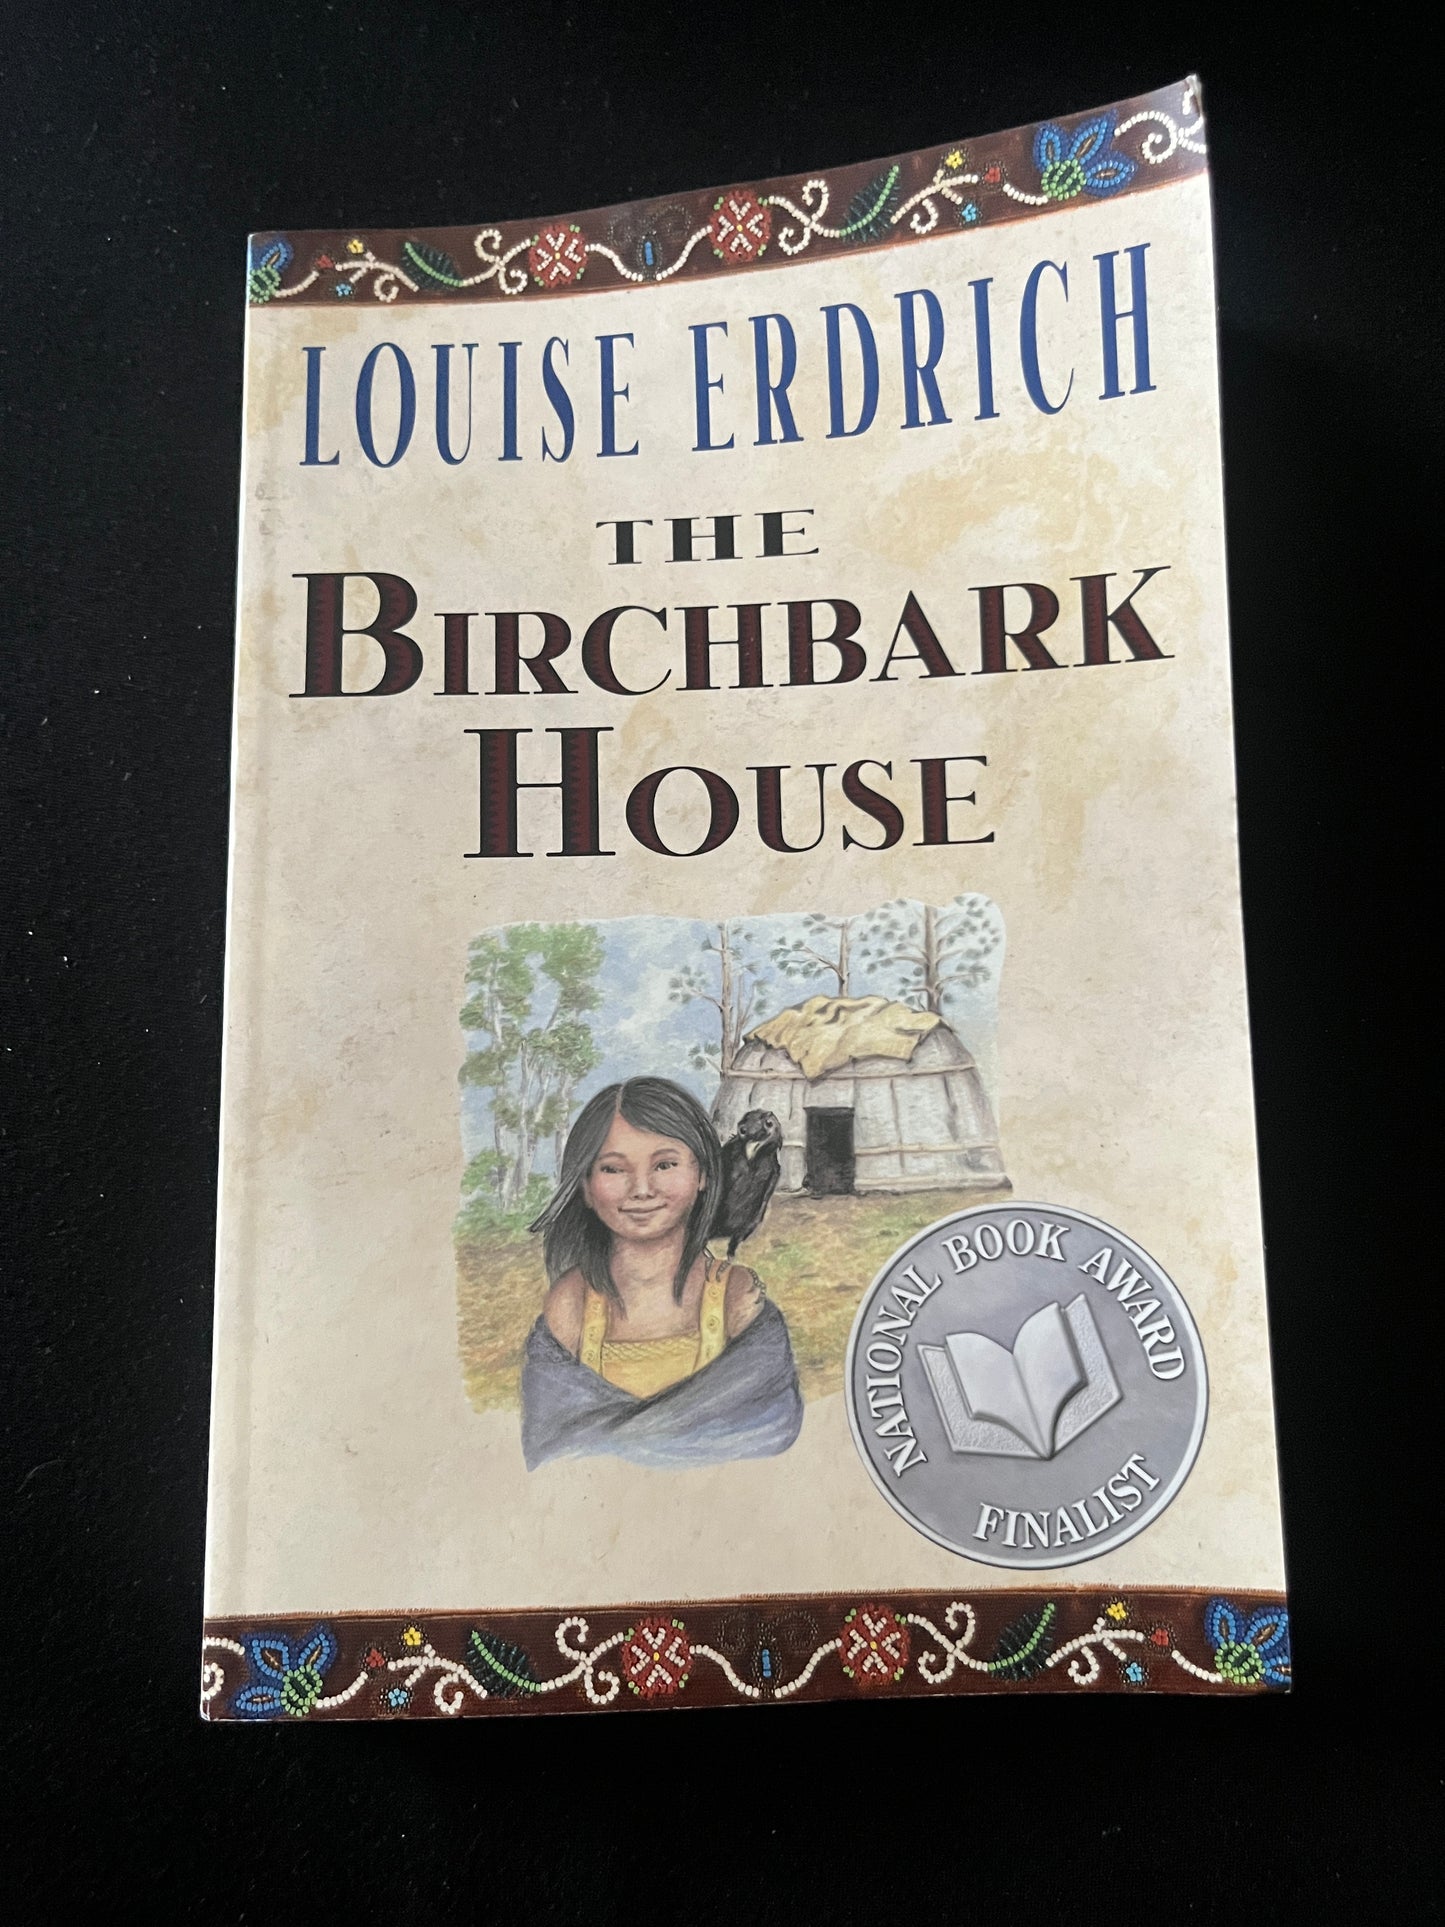 THE BIRCHBARK HOUSE by Louise Erdrich